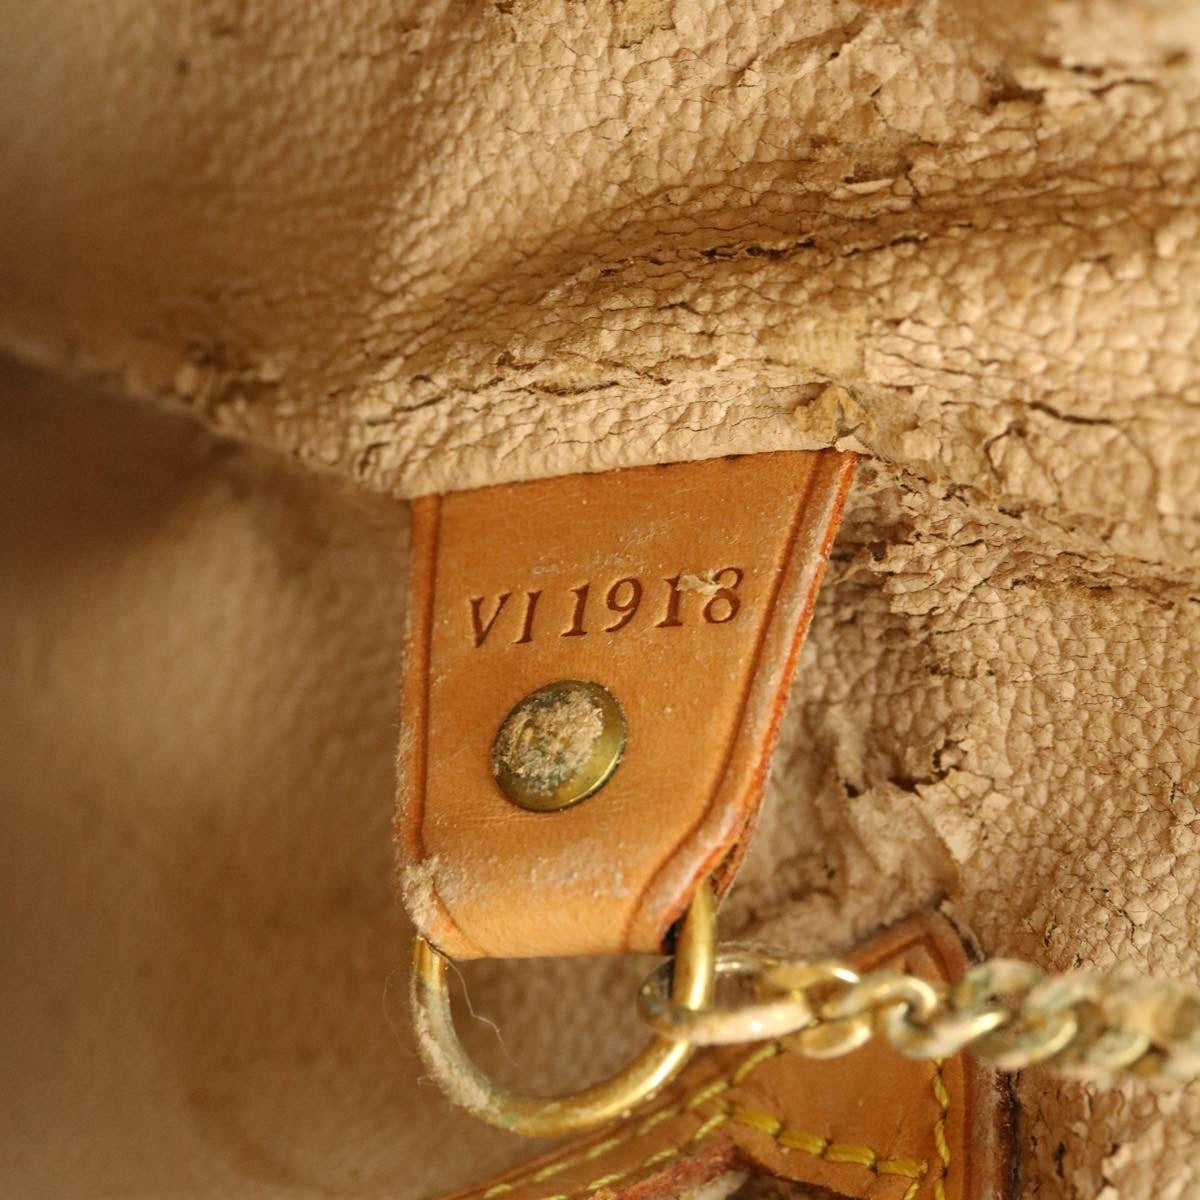 Louis Vuitton is back – 2:48AM